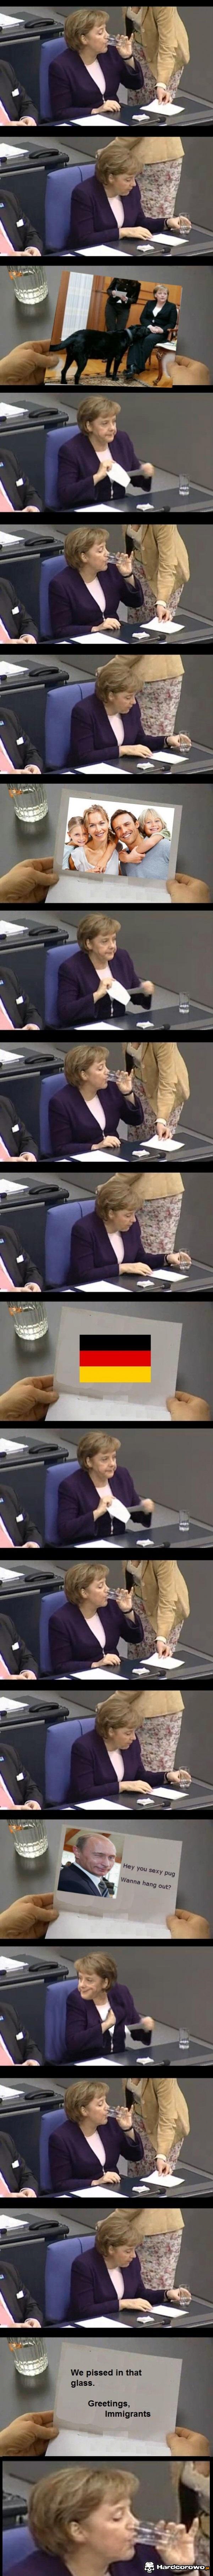 List do Merkel - 1